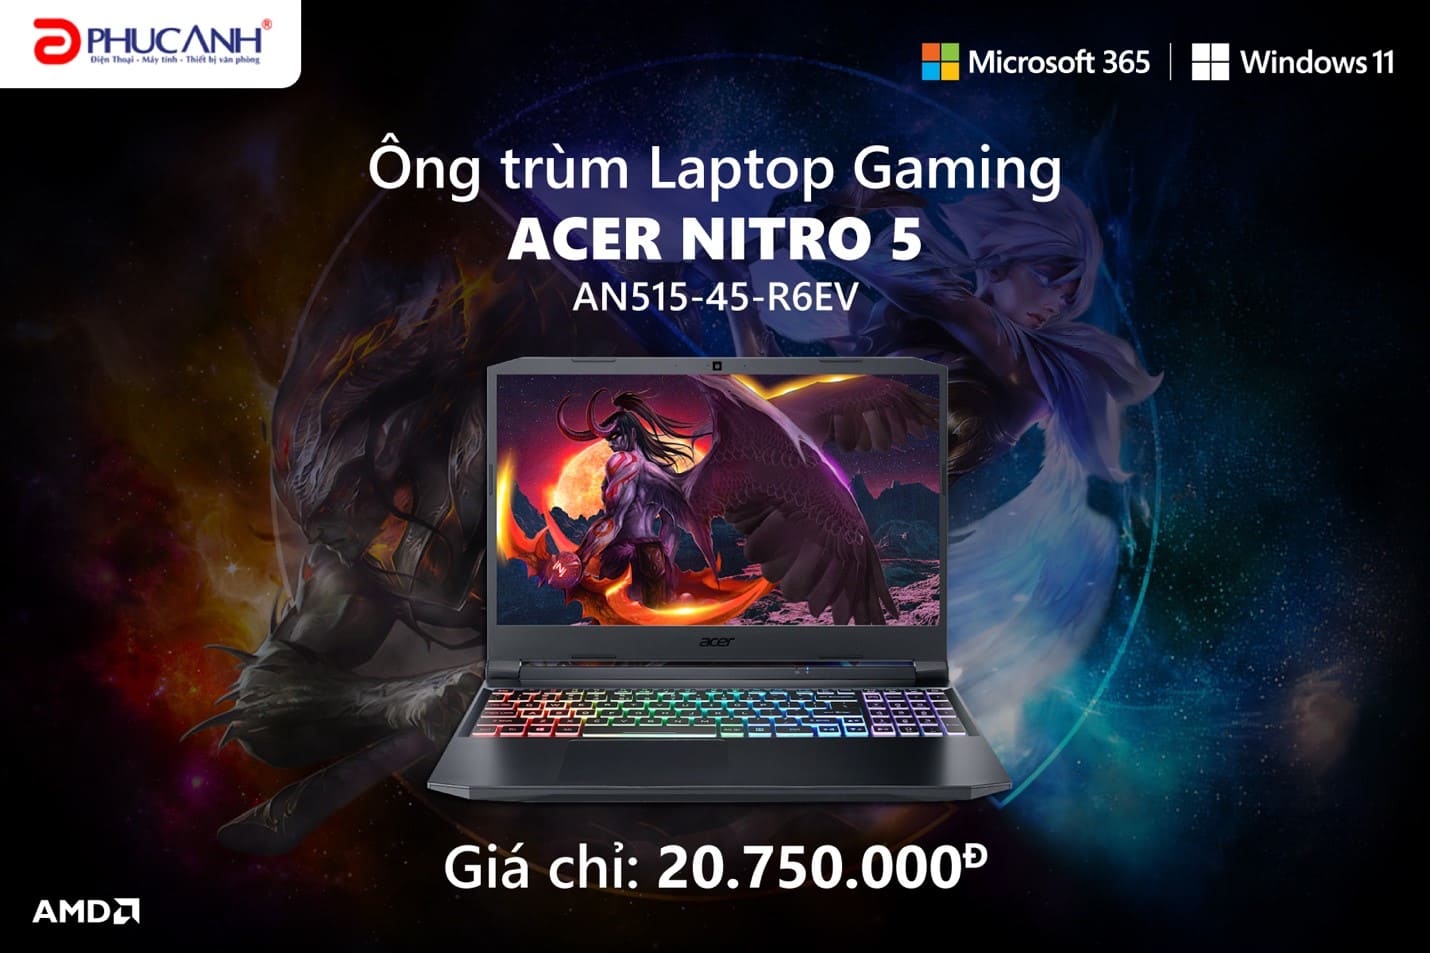 [Công nghệ] Acer Nitro 5 AN515 - Ông trùm trong phân khúc laptop gaming